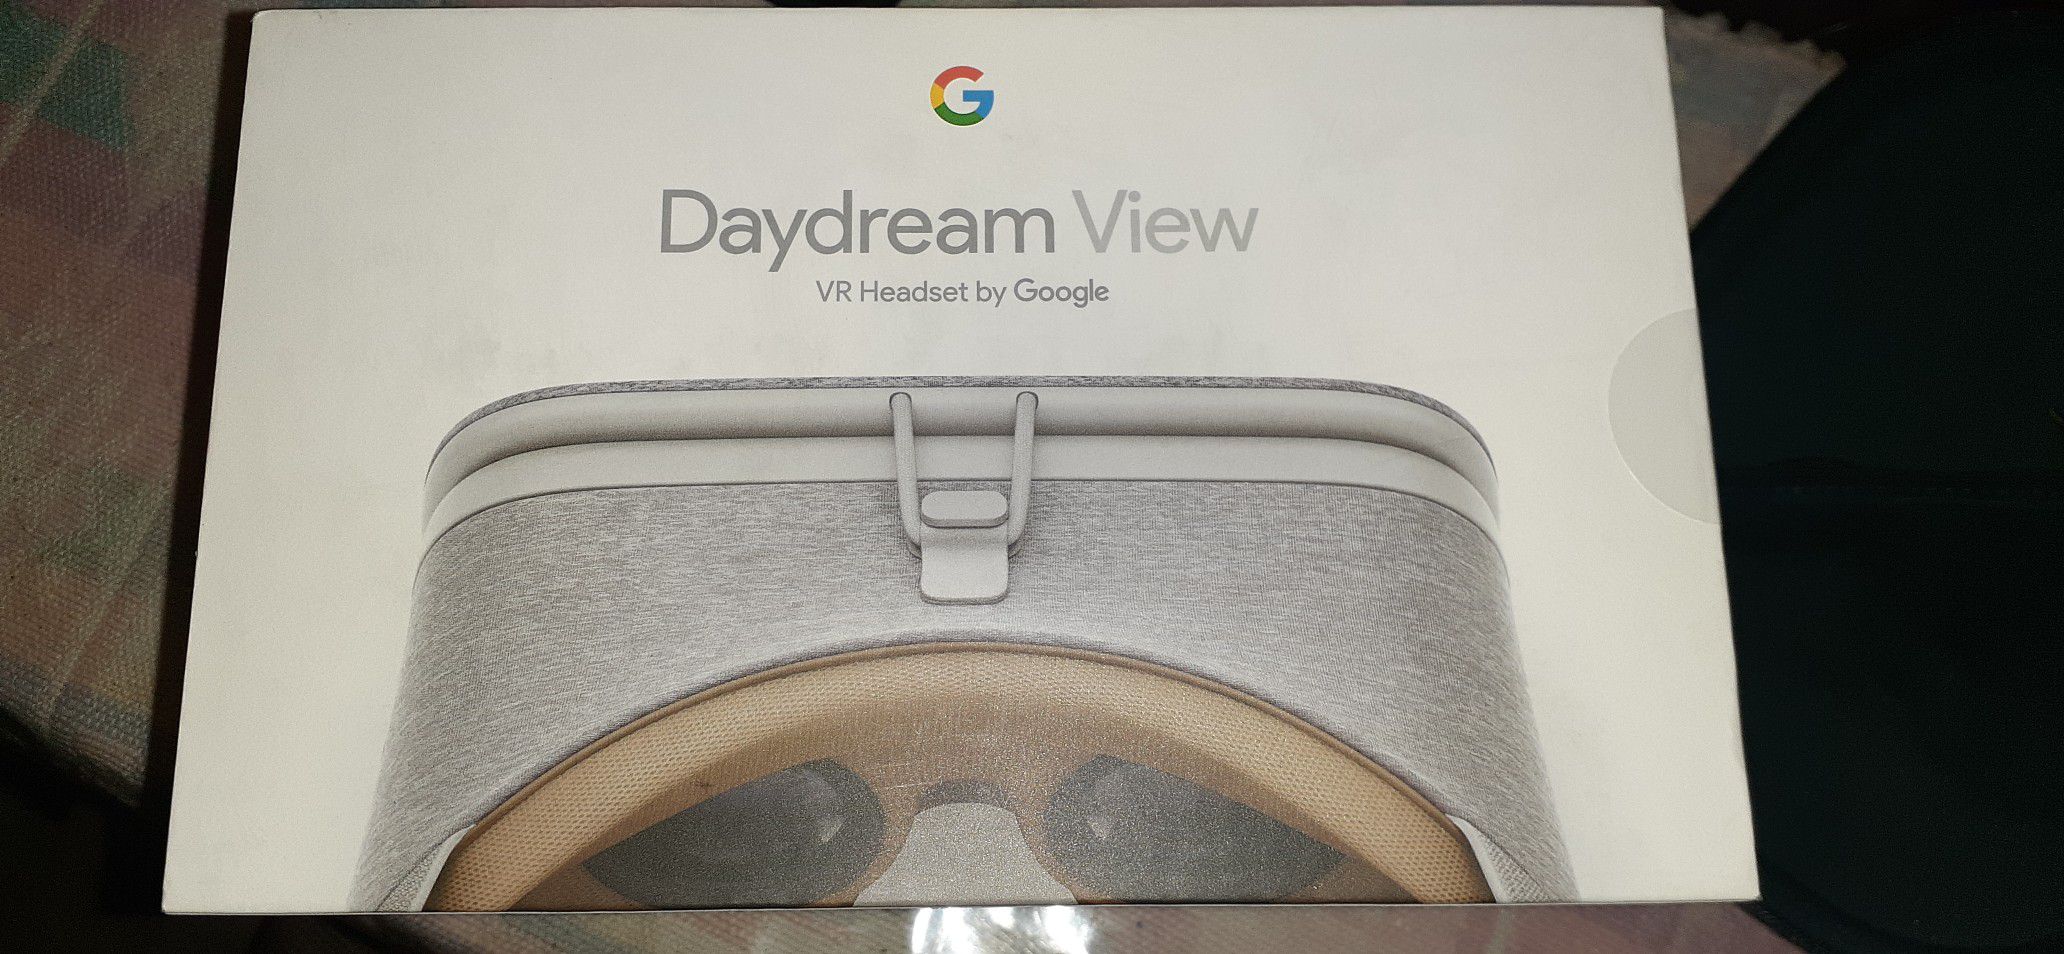 Daydream View Google VR